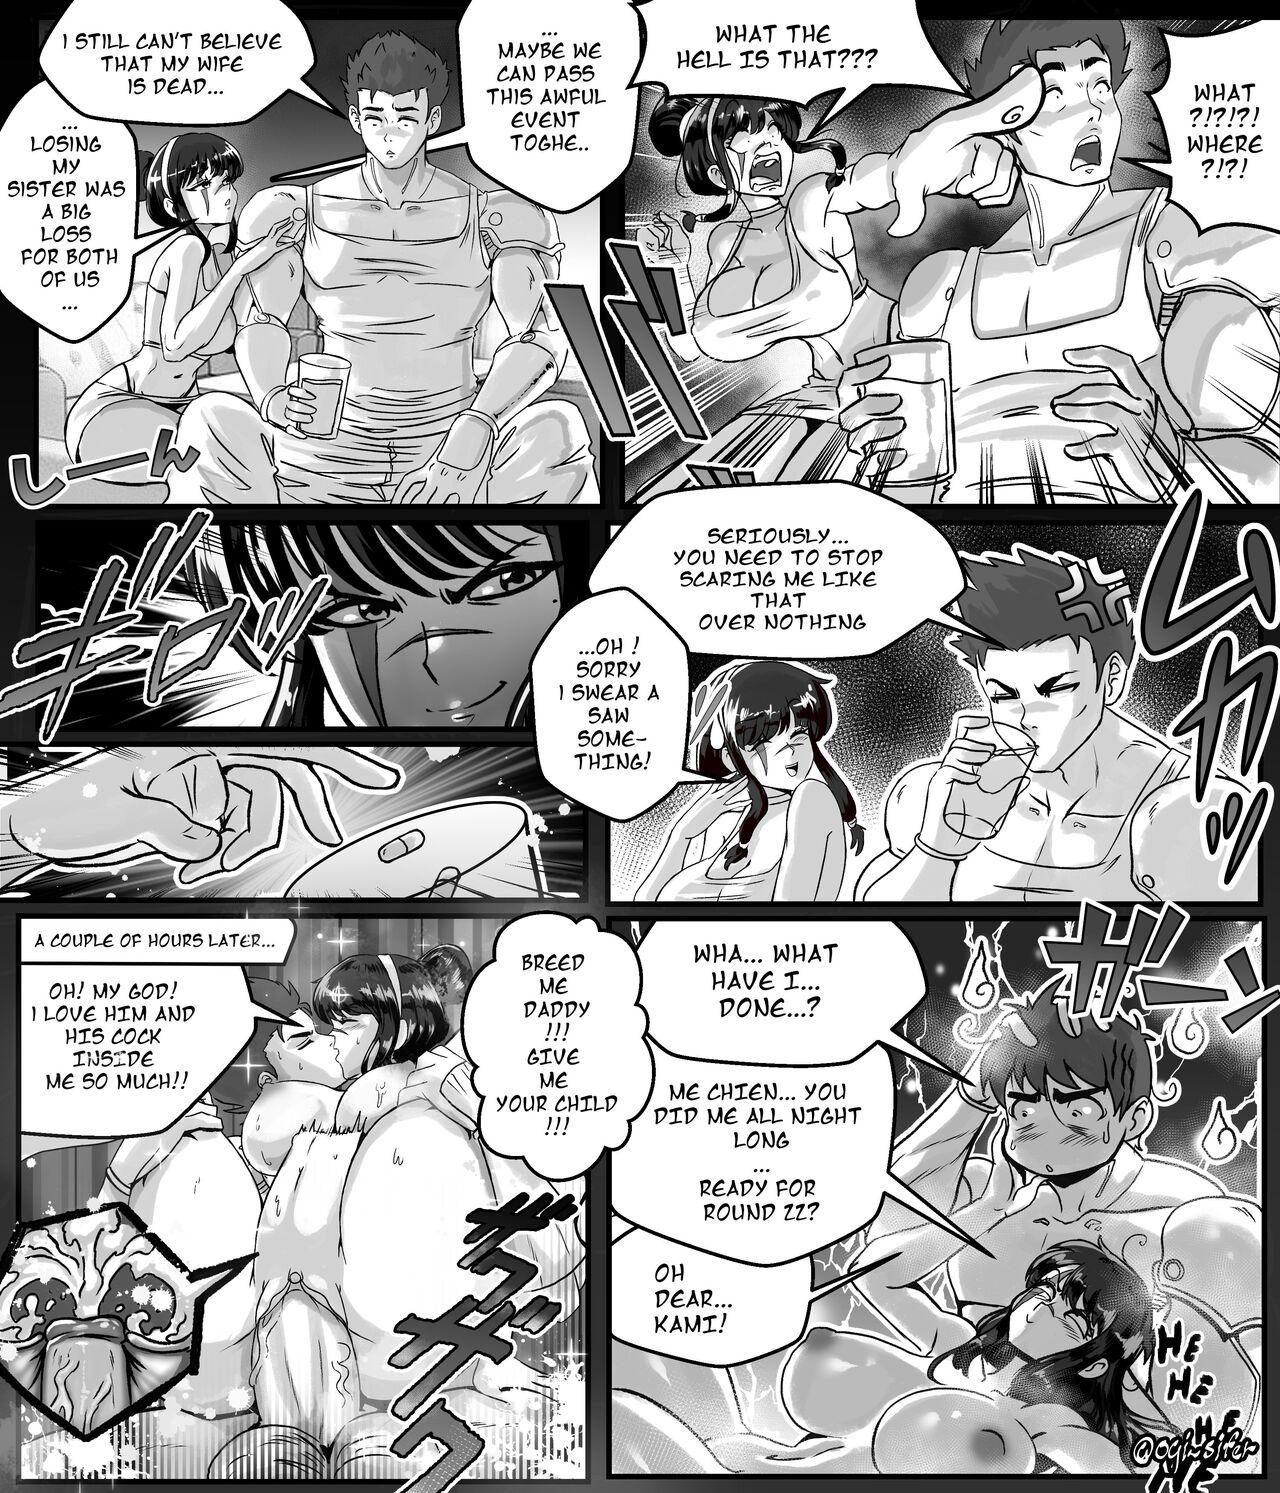 Amateur Cum Ogi manga comics collection - Original Dragon ball z Dragon ball Dragon ball super Highschool - Picture 1